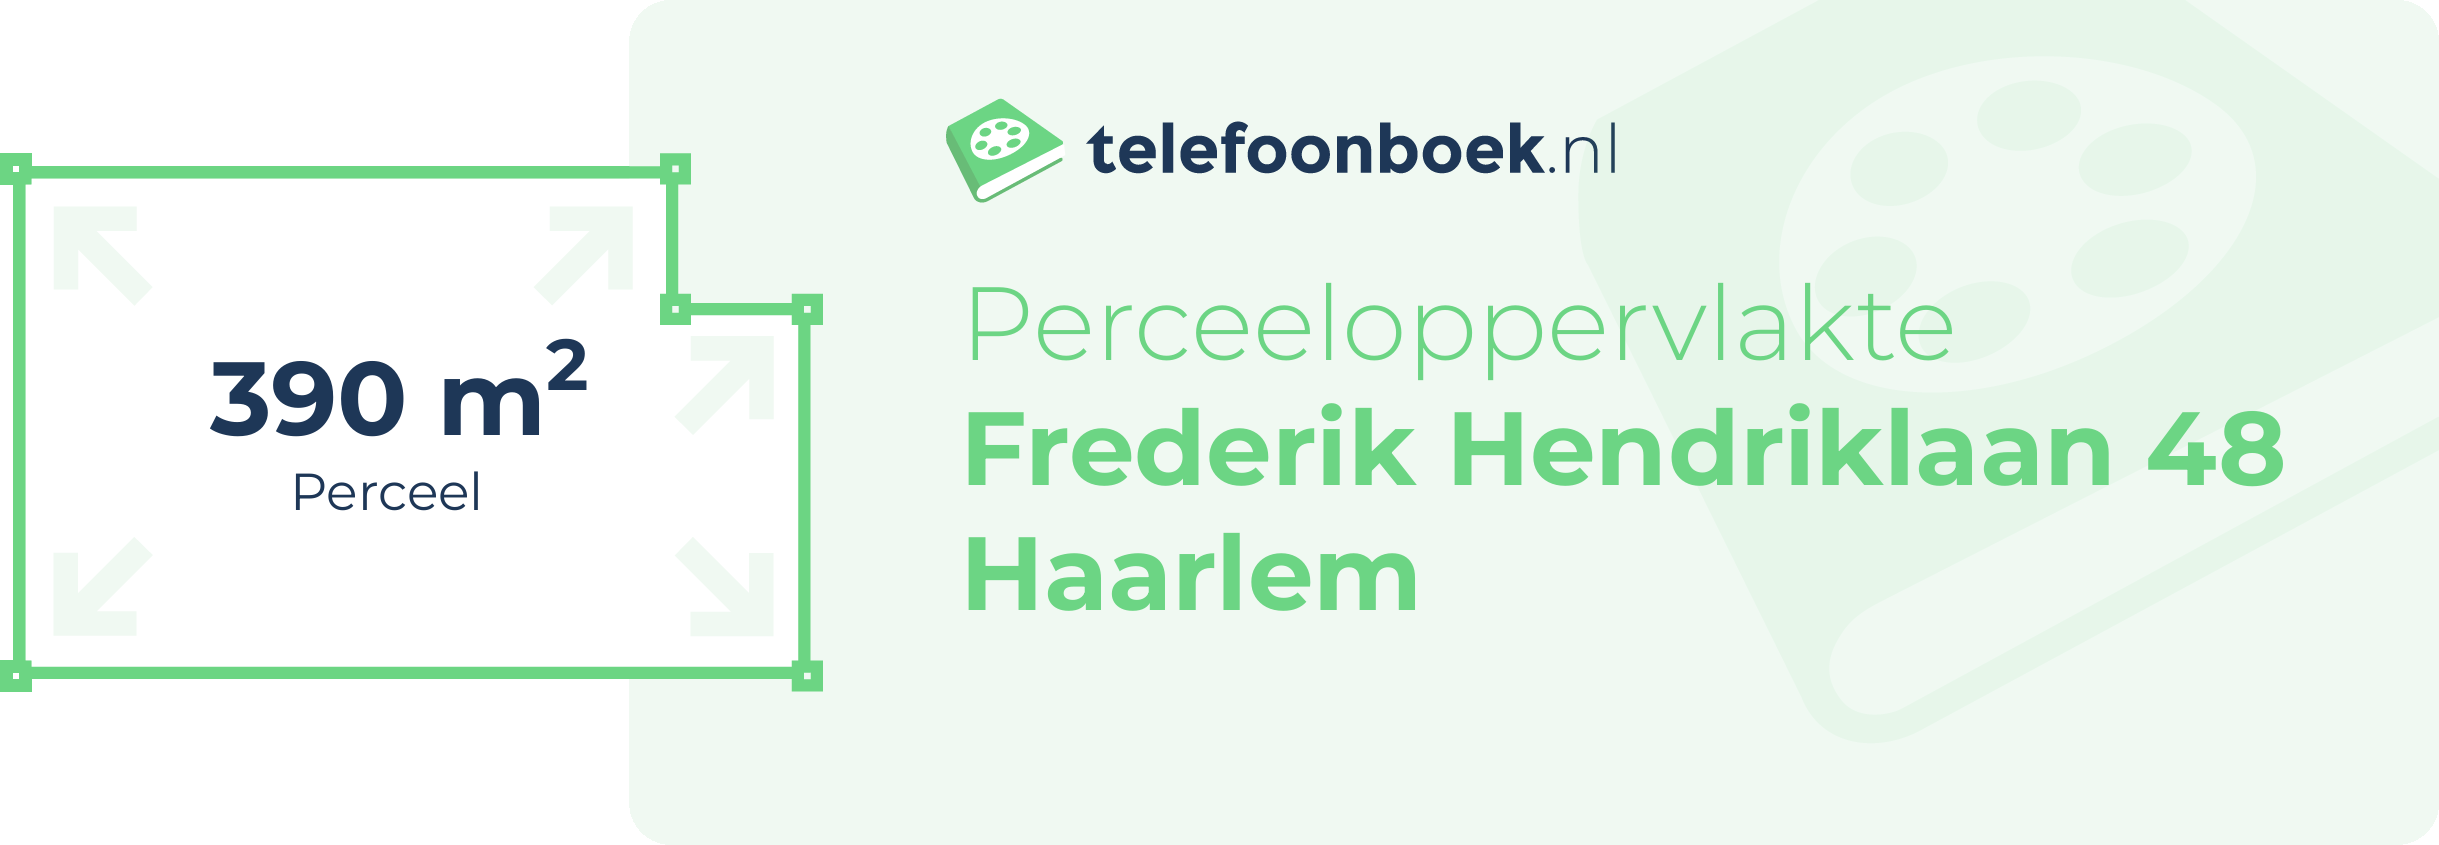 Perceeloppervlakte Frederik Hendriklaan 48 Haarlem